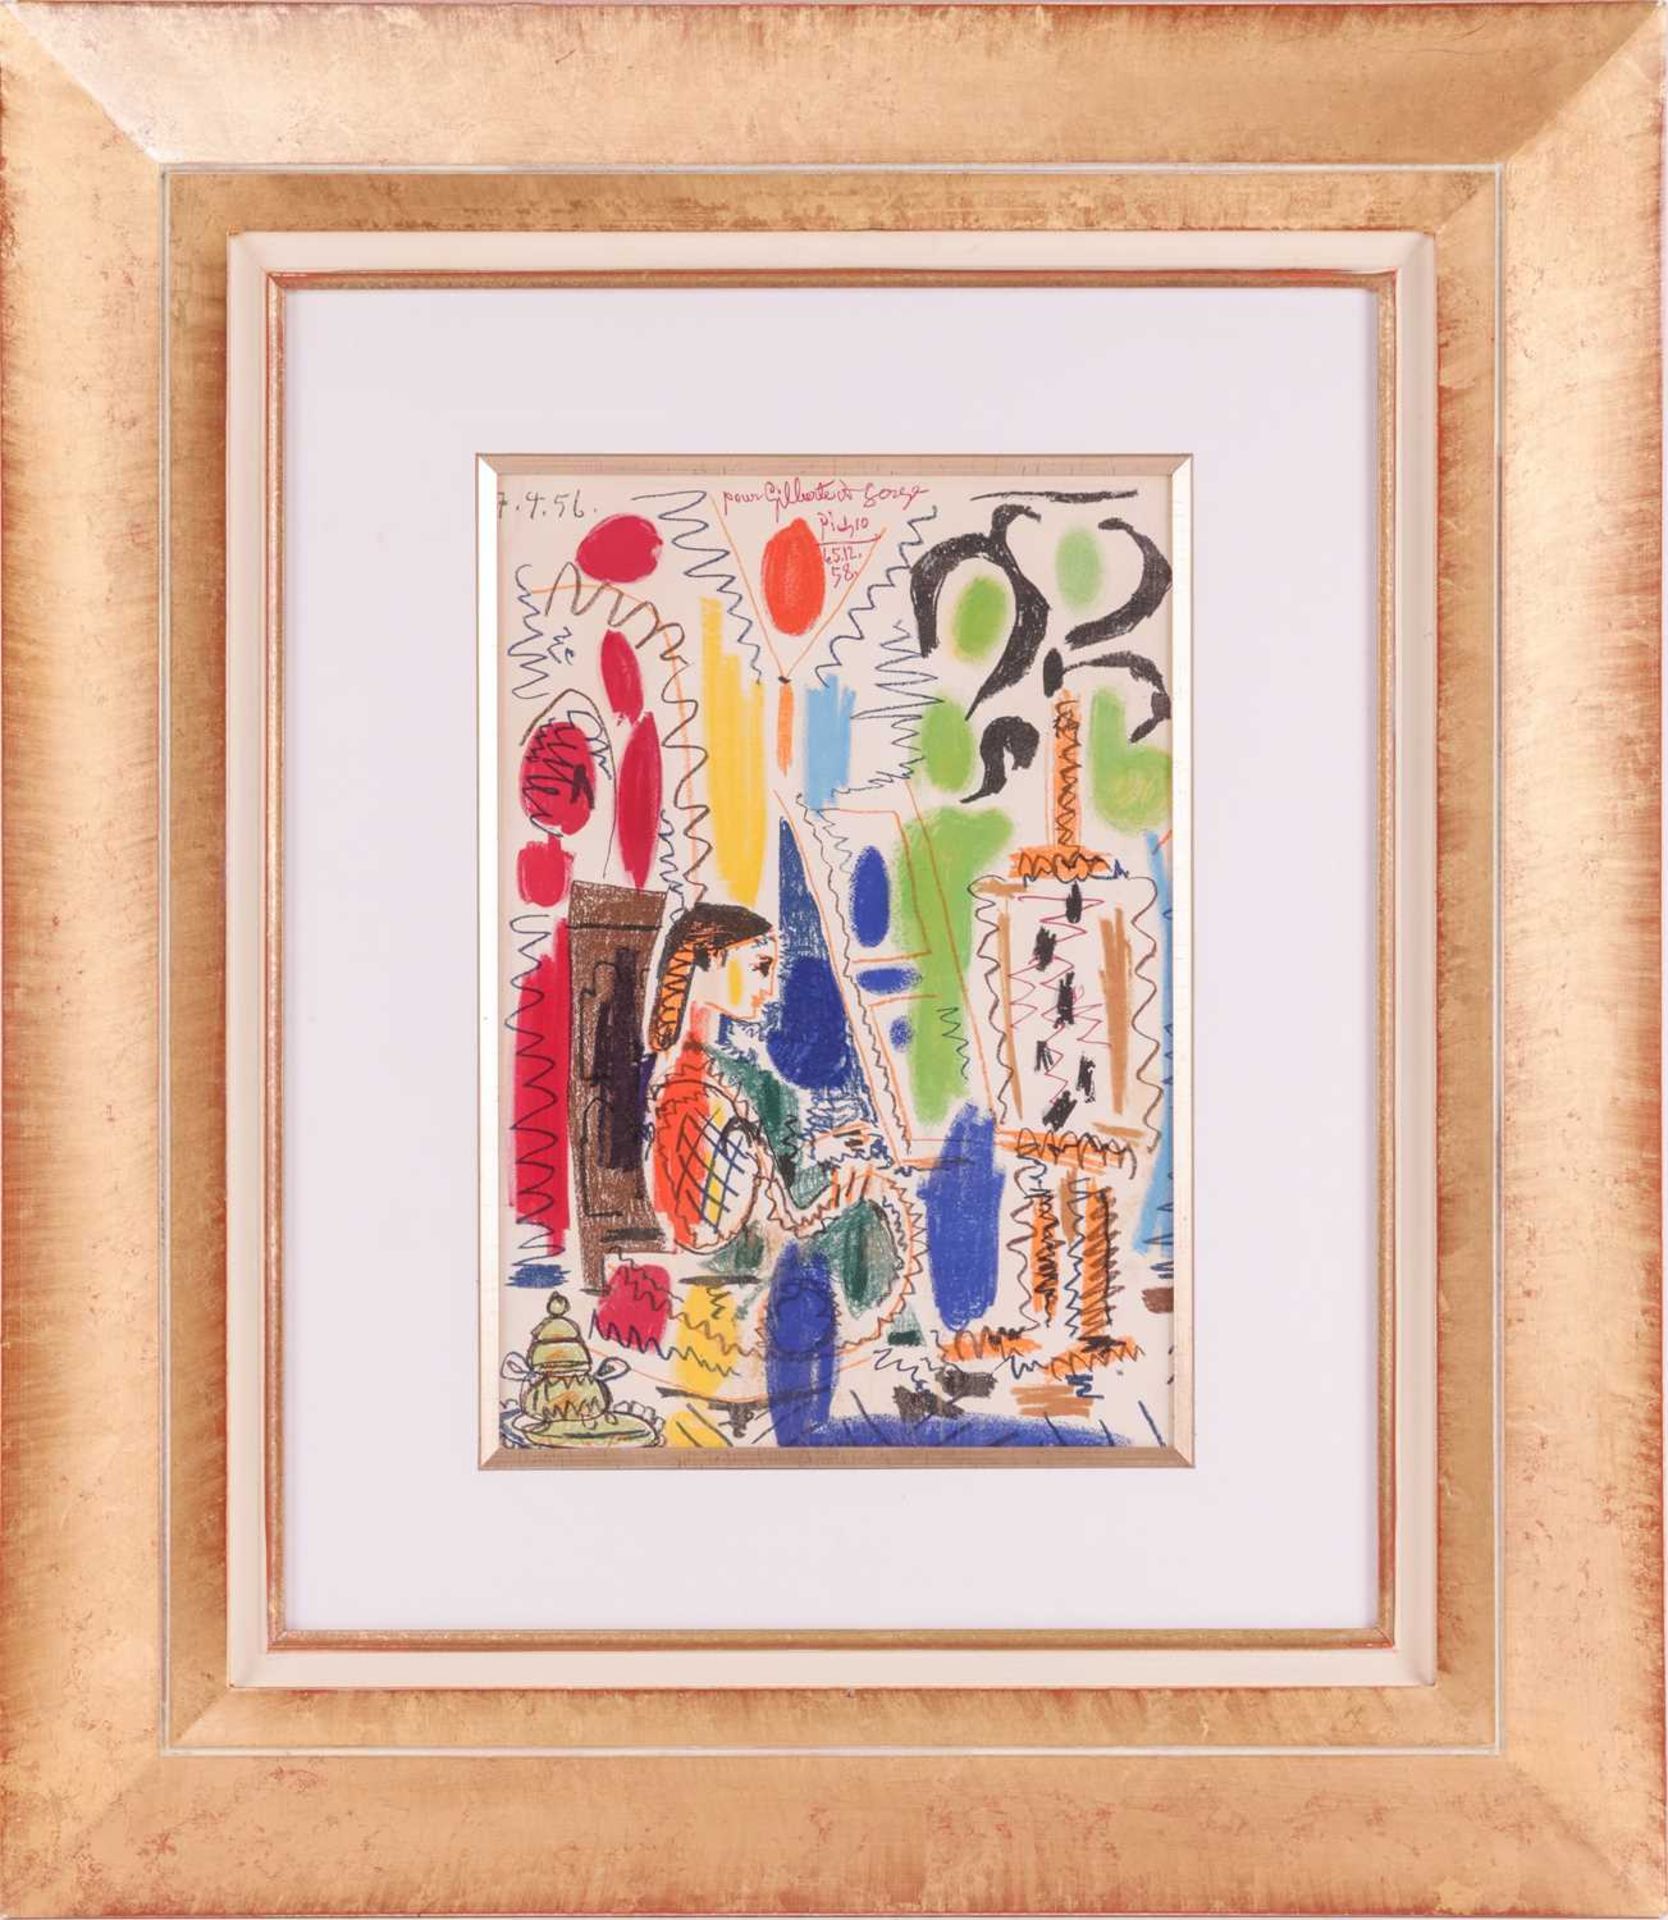 After Pablo Picasso (Spanish, 1881 - 1973), L'Atelier de Cannes (1958), colour lithograph, 43 x 30 c - Image 2 of 17